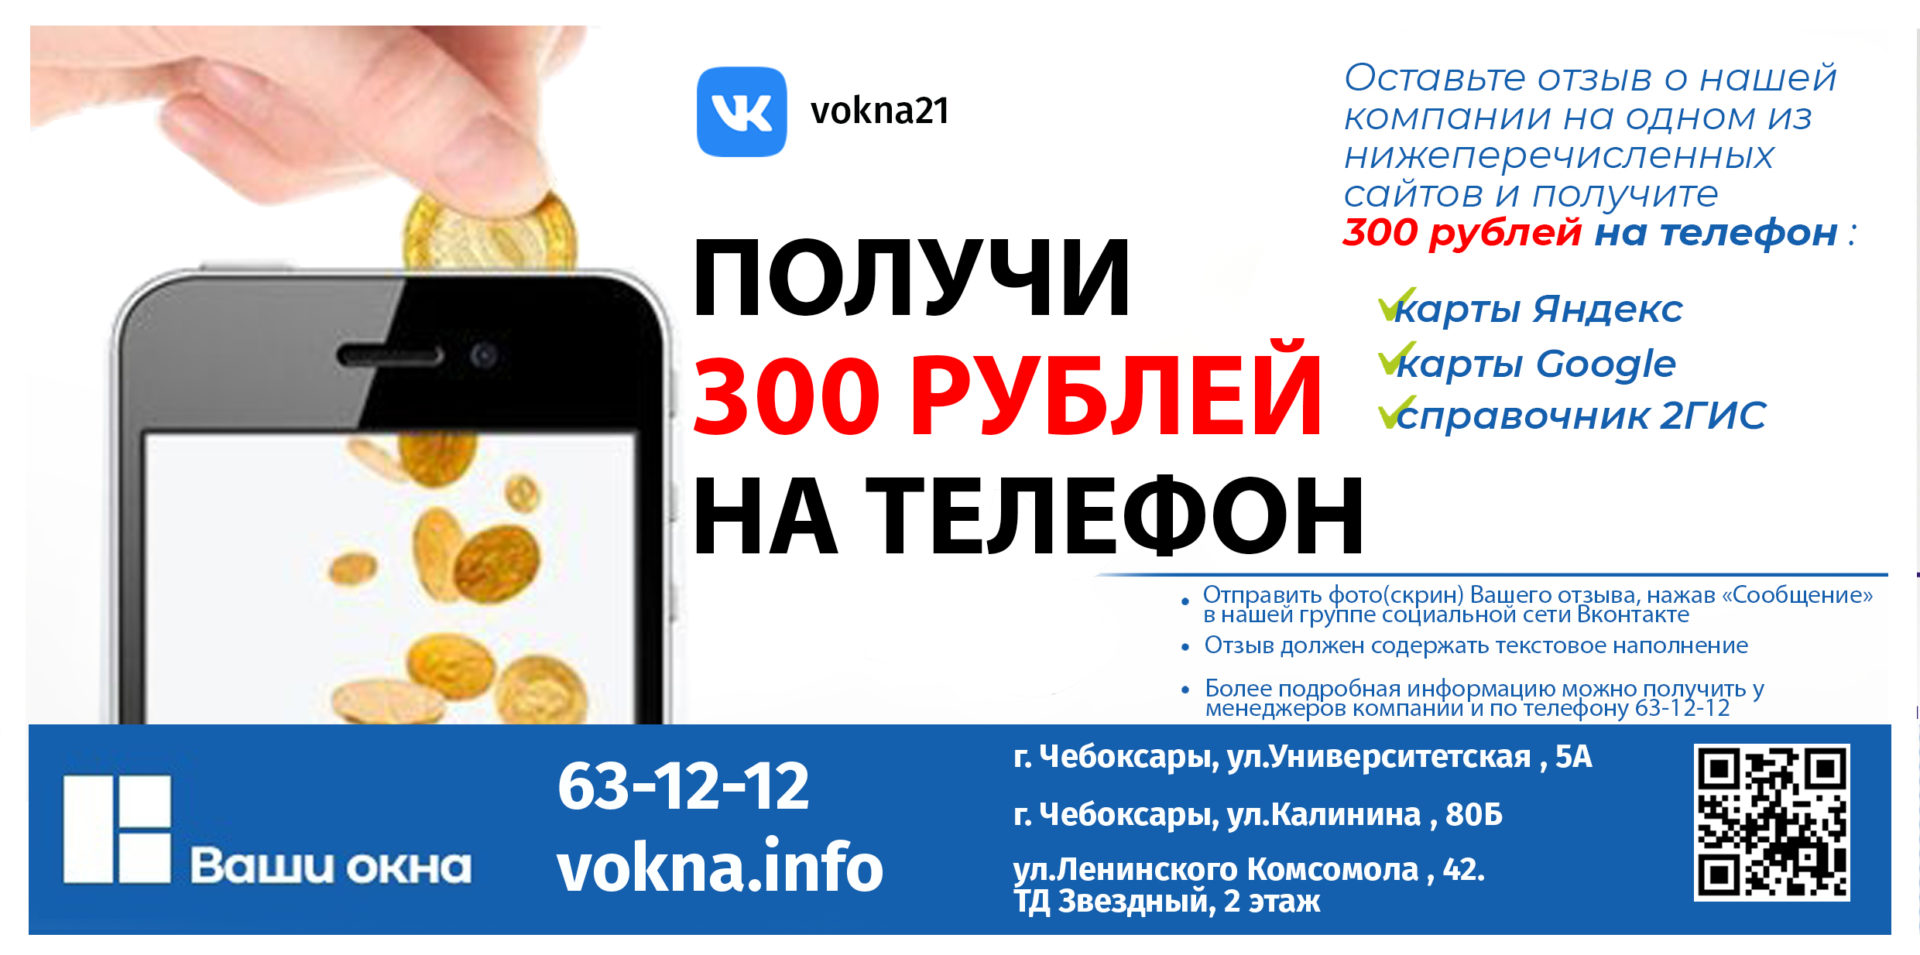 Как получить 300 рублей на мобильный счет?! Легко!